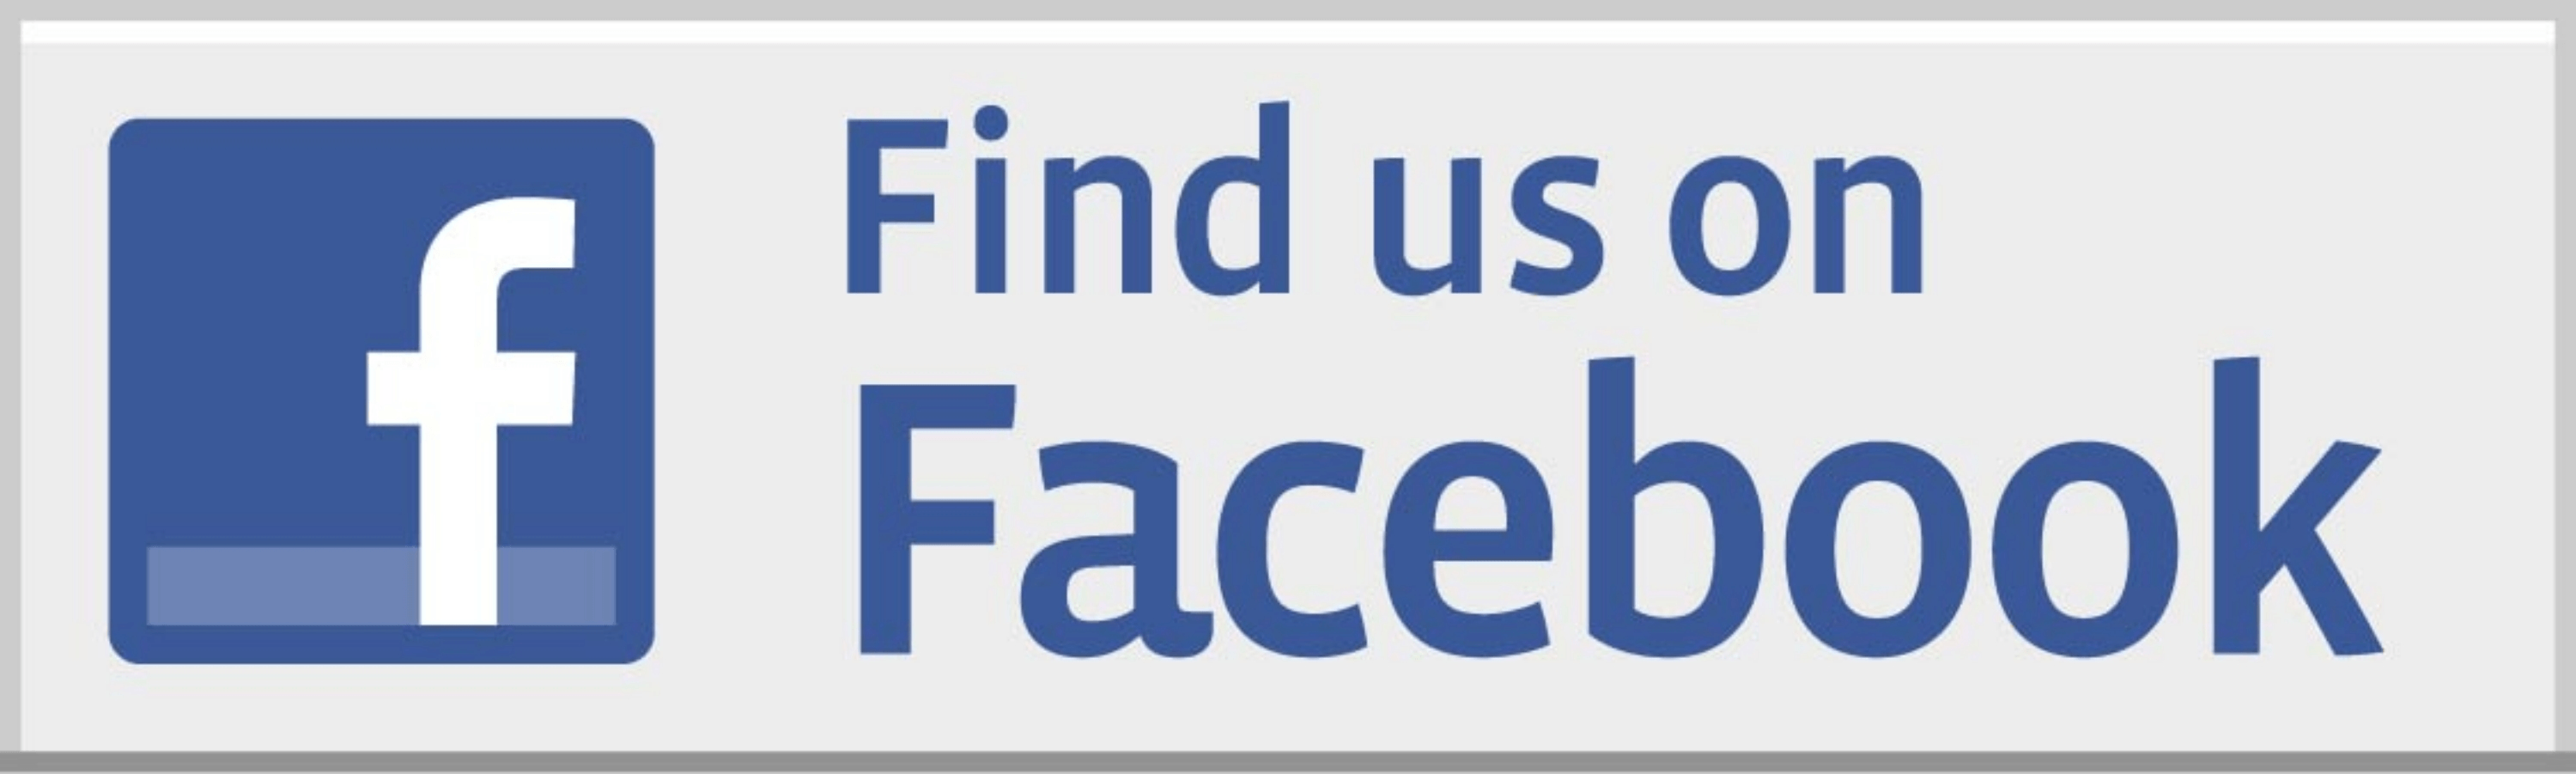 Find Us On Facebook Official Logo - Facebook Logo